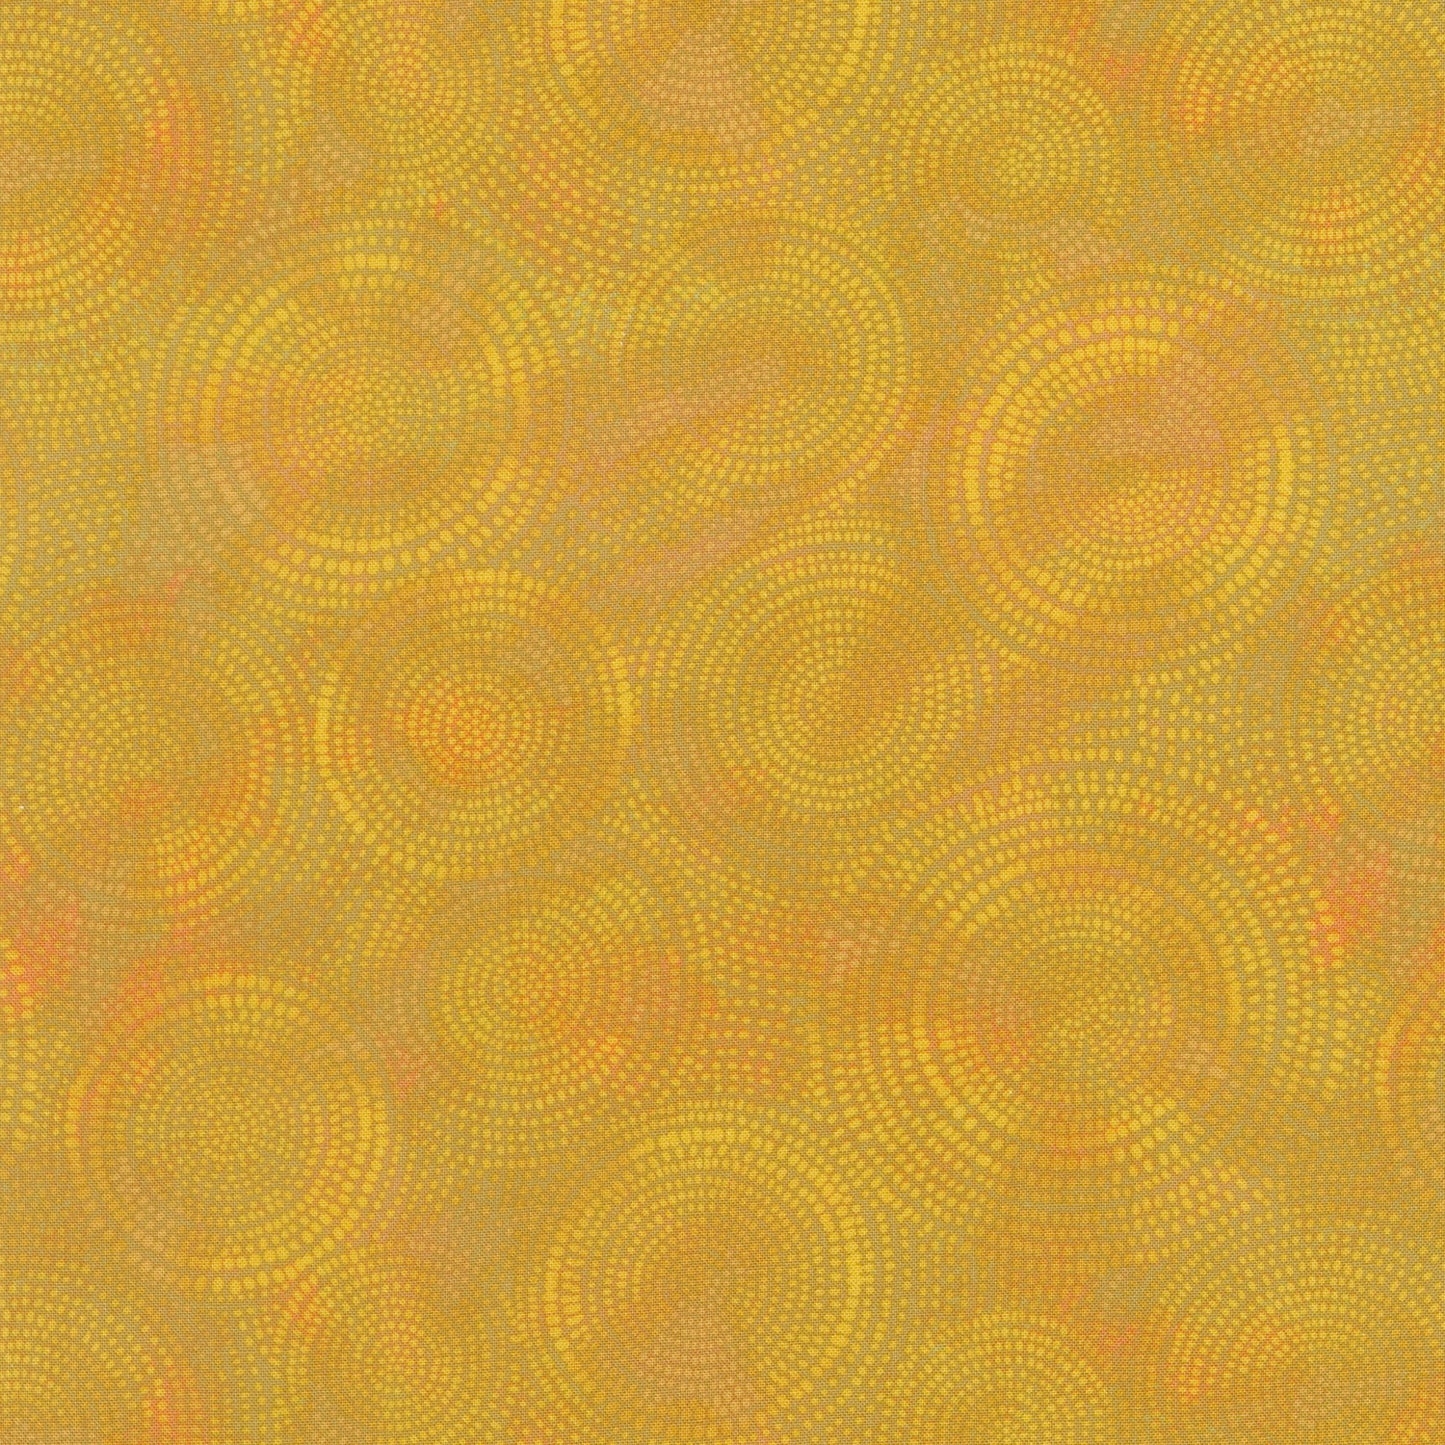 Radiance - Circle Dots Gold Yardage Primary Image